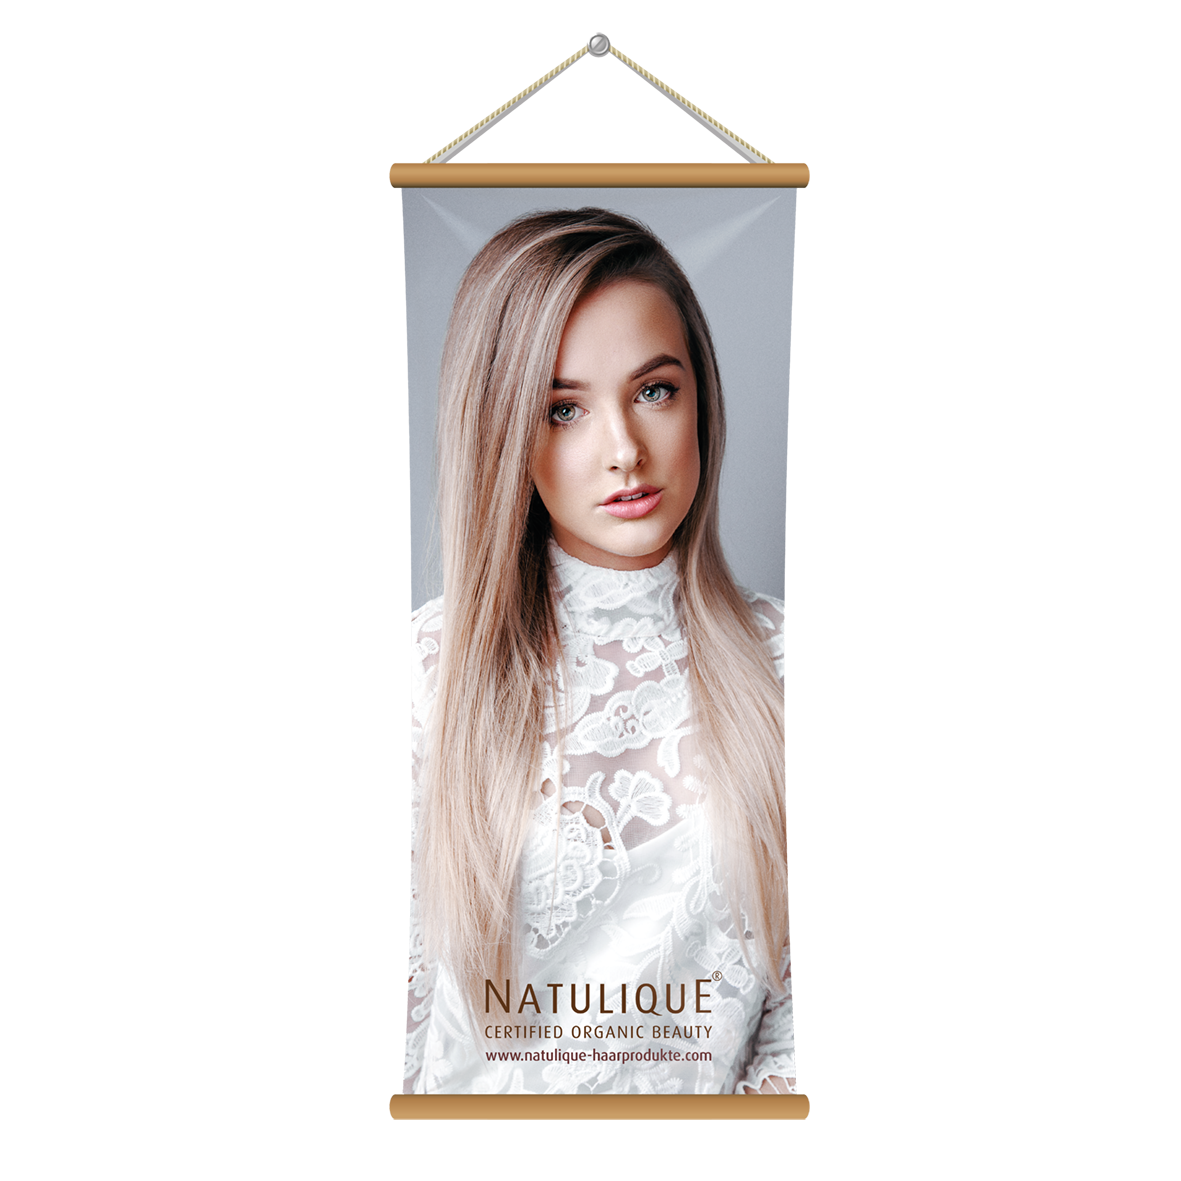 Natulique_Poster_Models_1